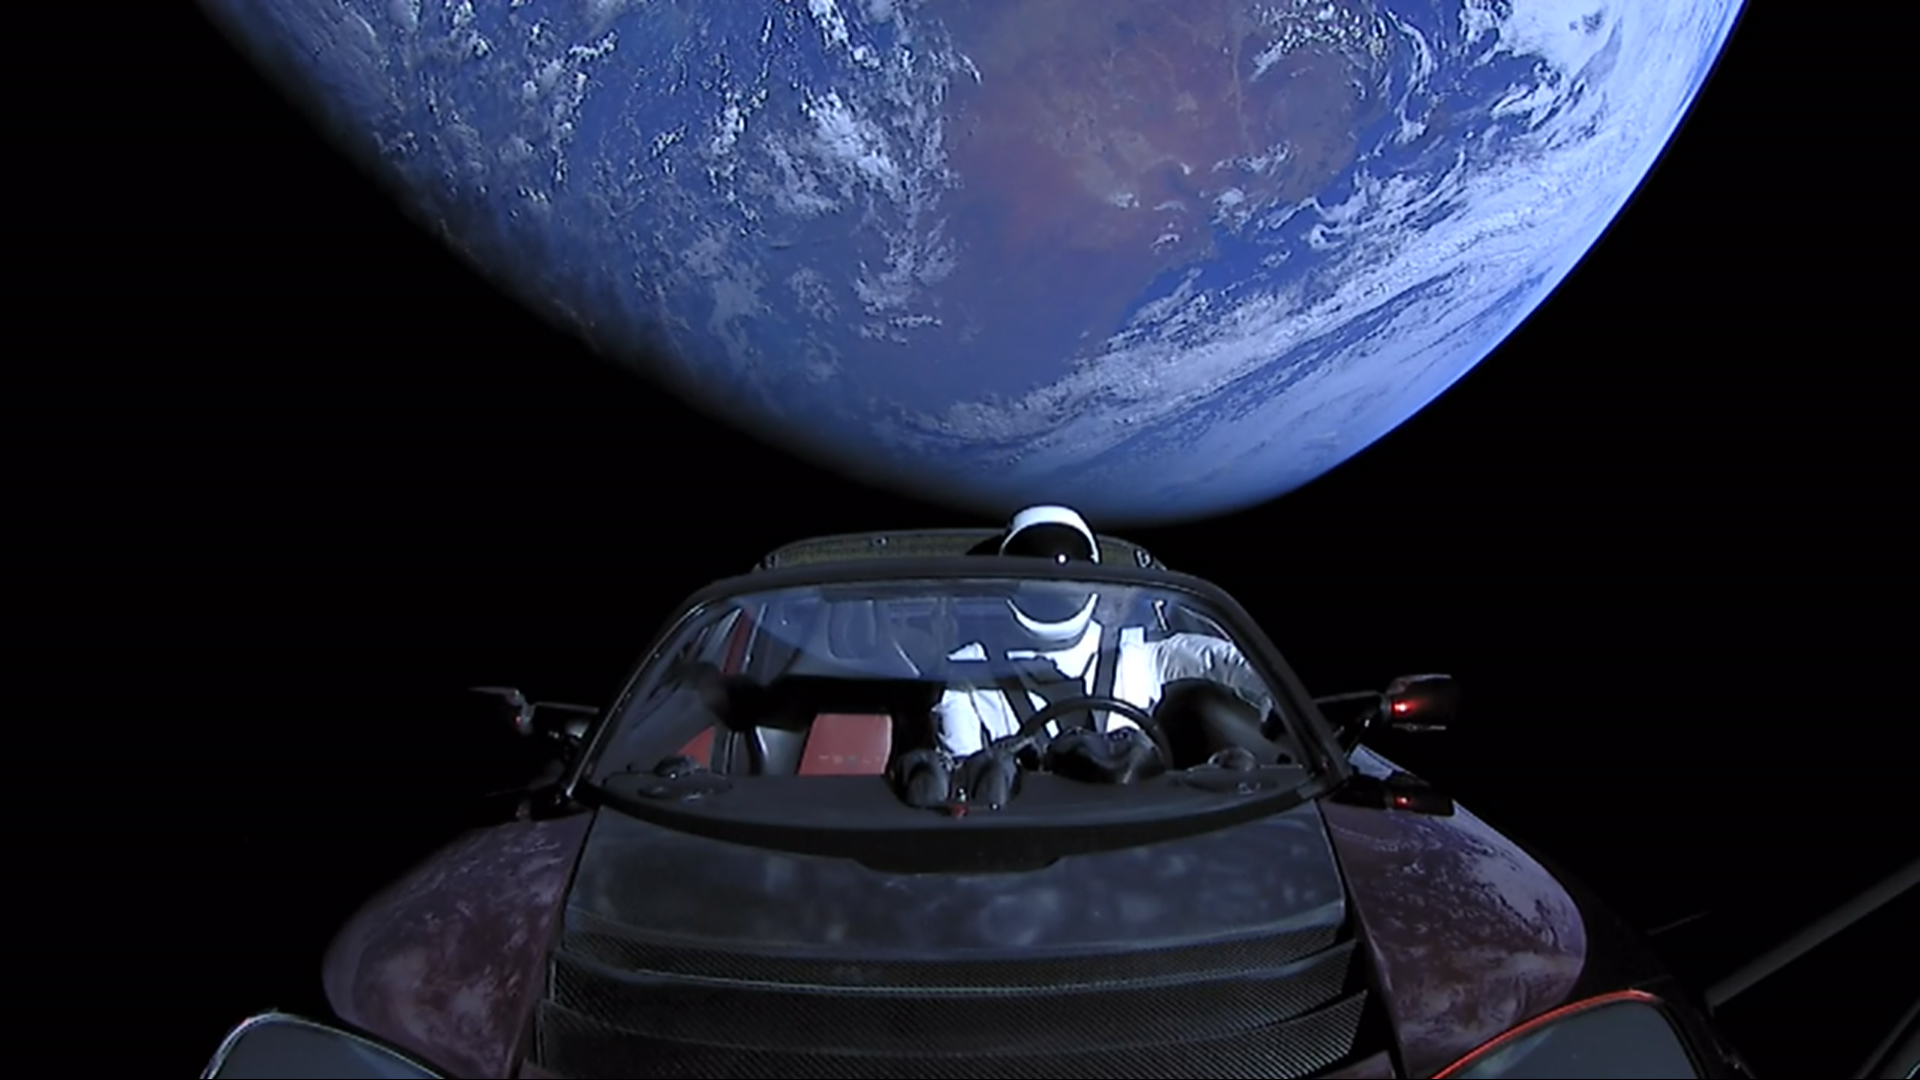 Der Tesla Roadster ist seit 5 Jahren im Weltraum unterwegs - er hat über 4 Milliarden Kilometer zurückgelegt, die Sonne 3,5 Mal umrundet und befindet sich jetzt in einer Umlaufbahn um den Mars.